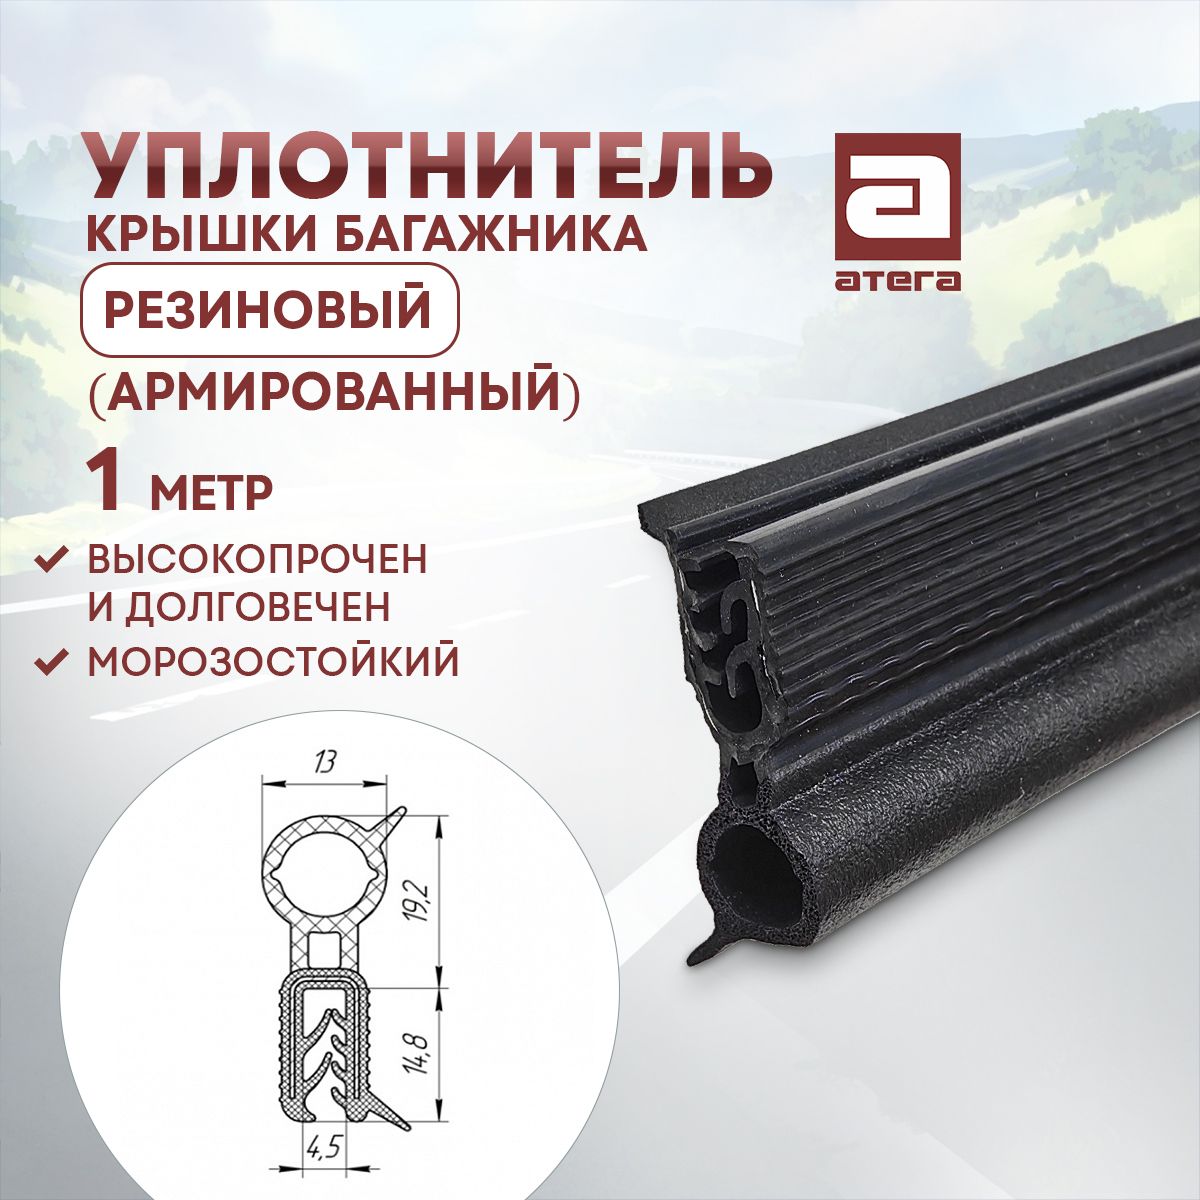 Уплотнитель крышки багажника армированный металлом АТЕГА У-912637, 1м